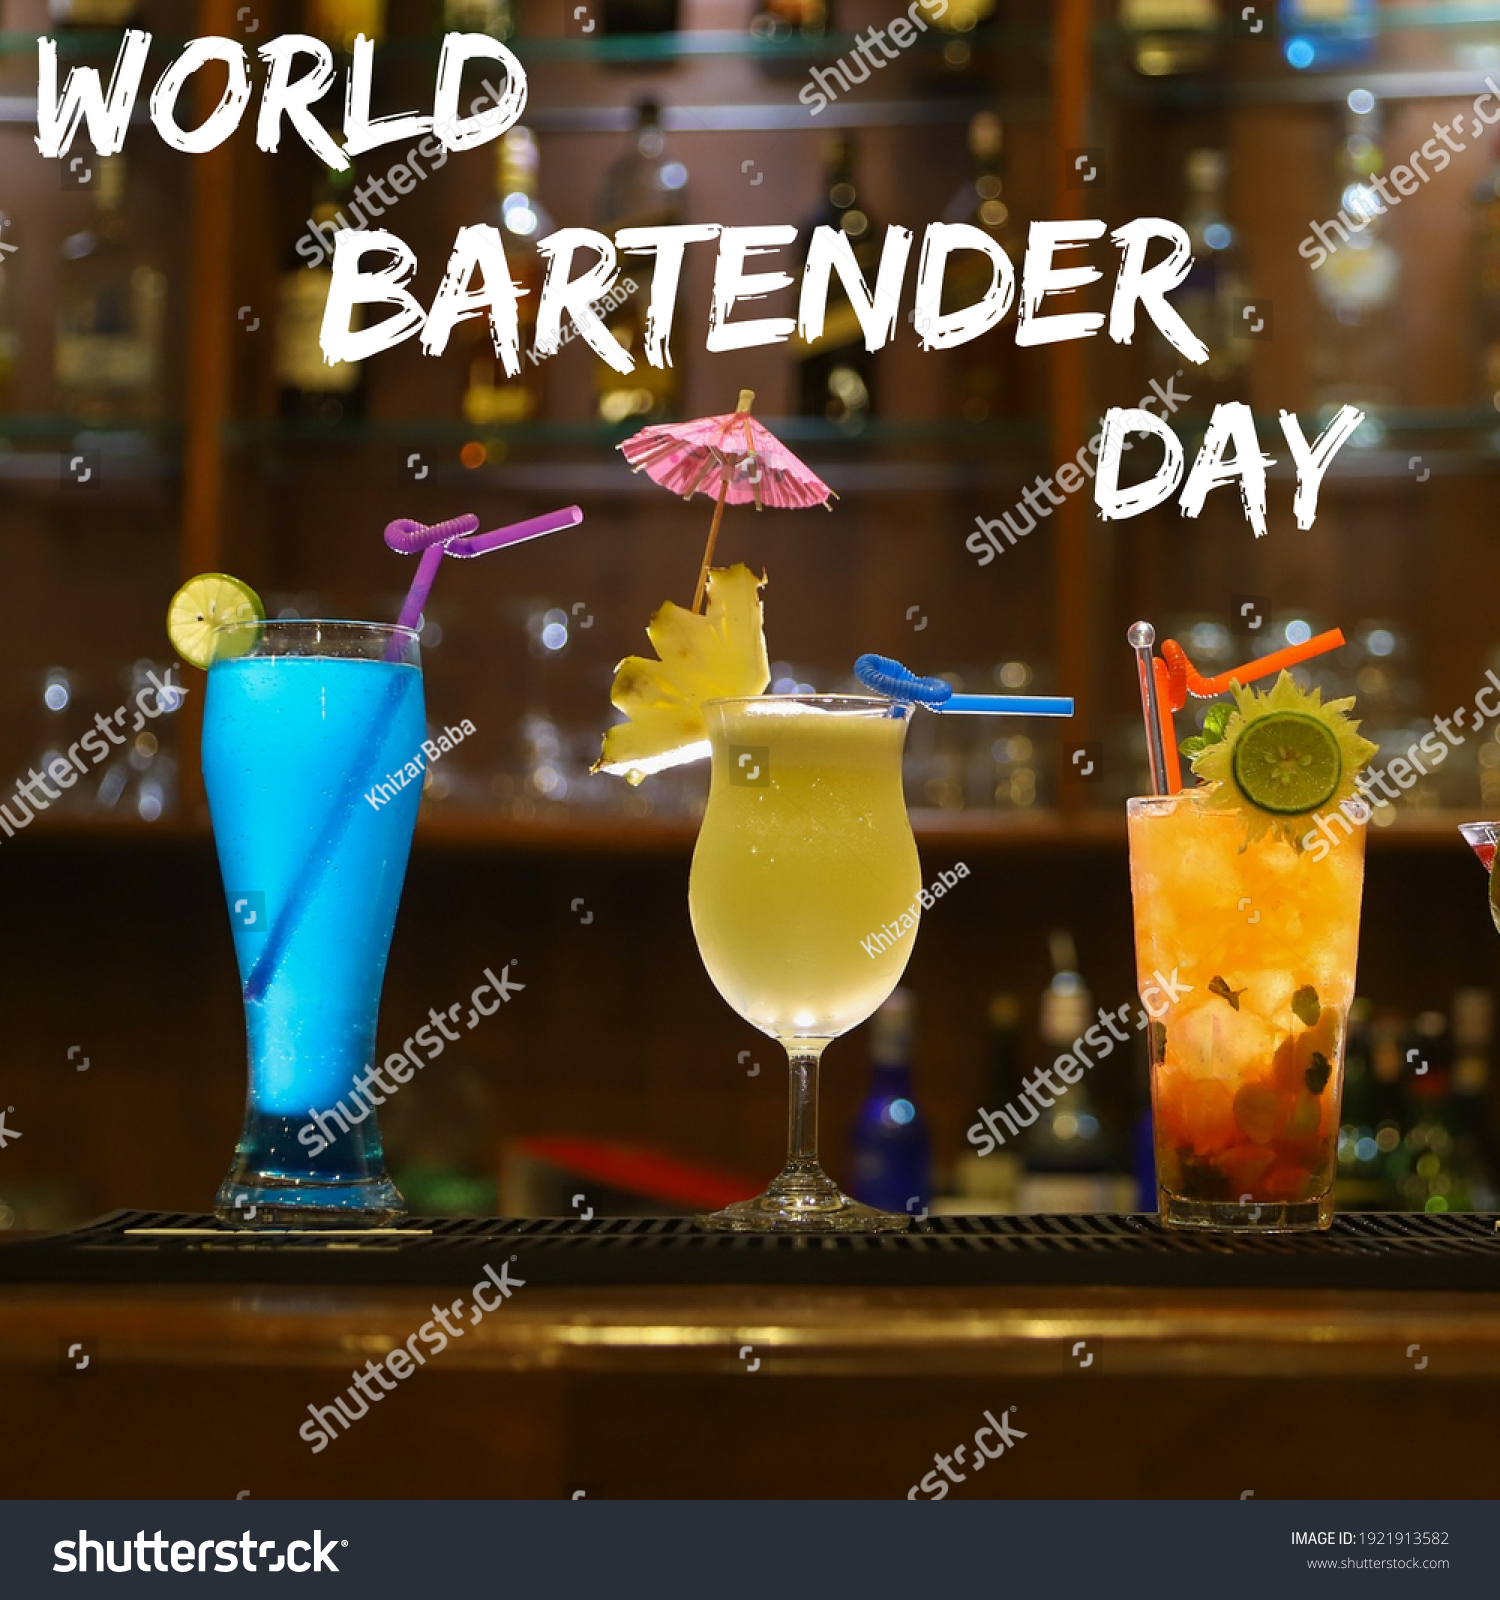 World Bartender Day 24 February Glasses Stock Photo 1921913582